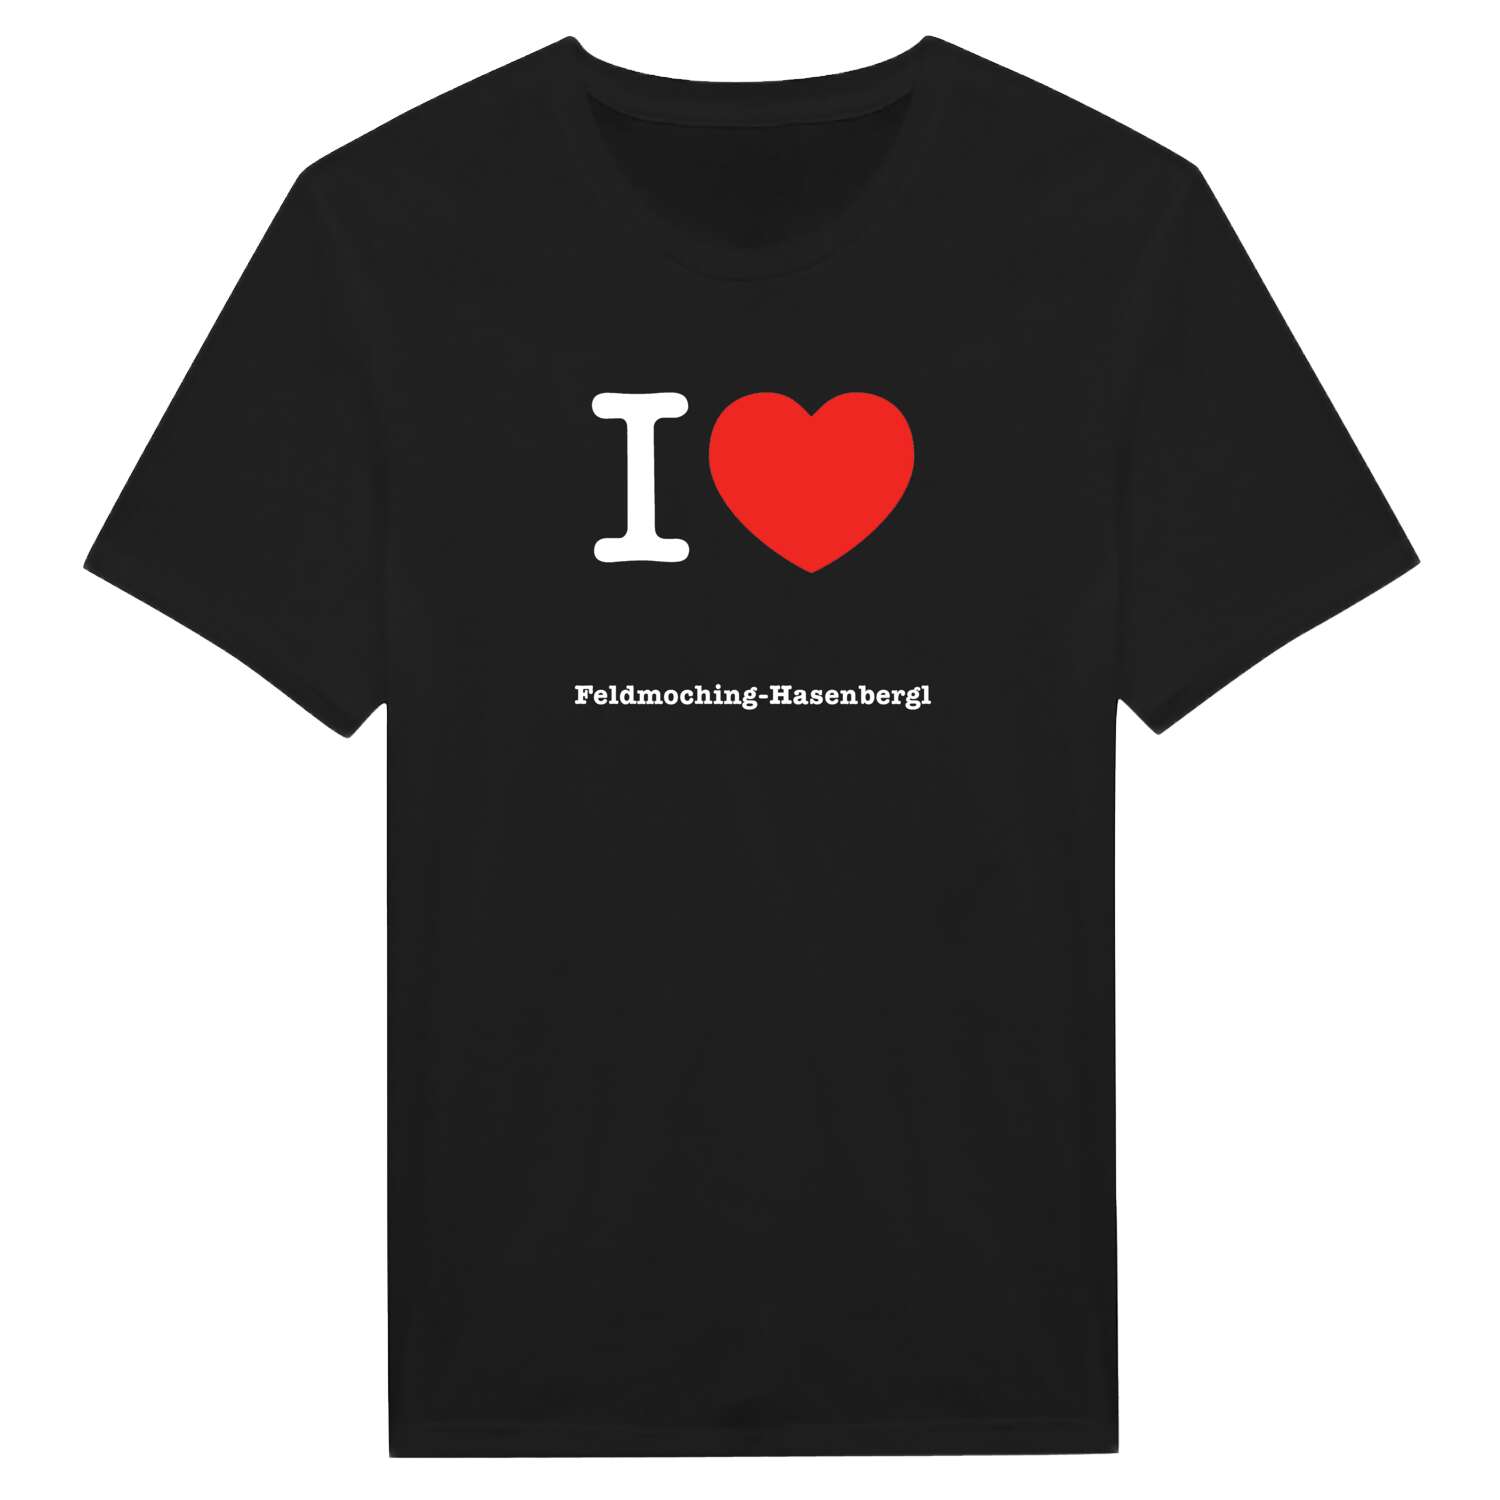 Feldmoching-Hasenbergl T-Shirt »I love«